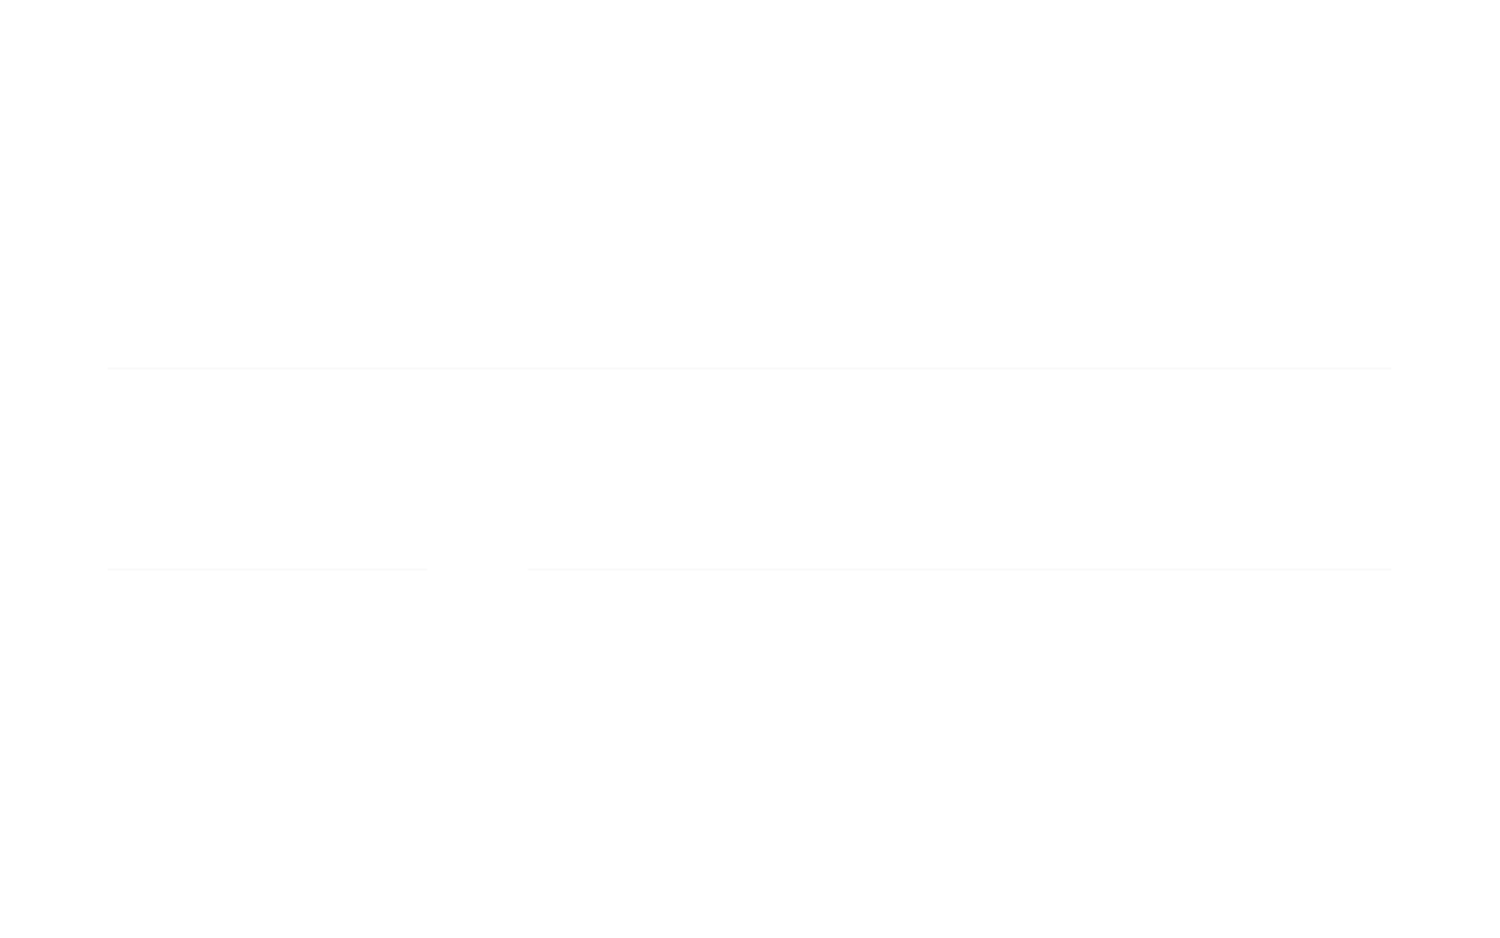 Dormouse Farm